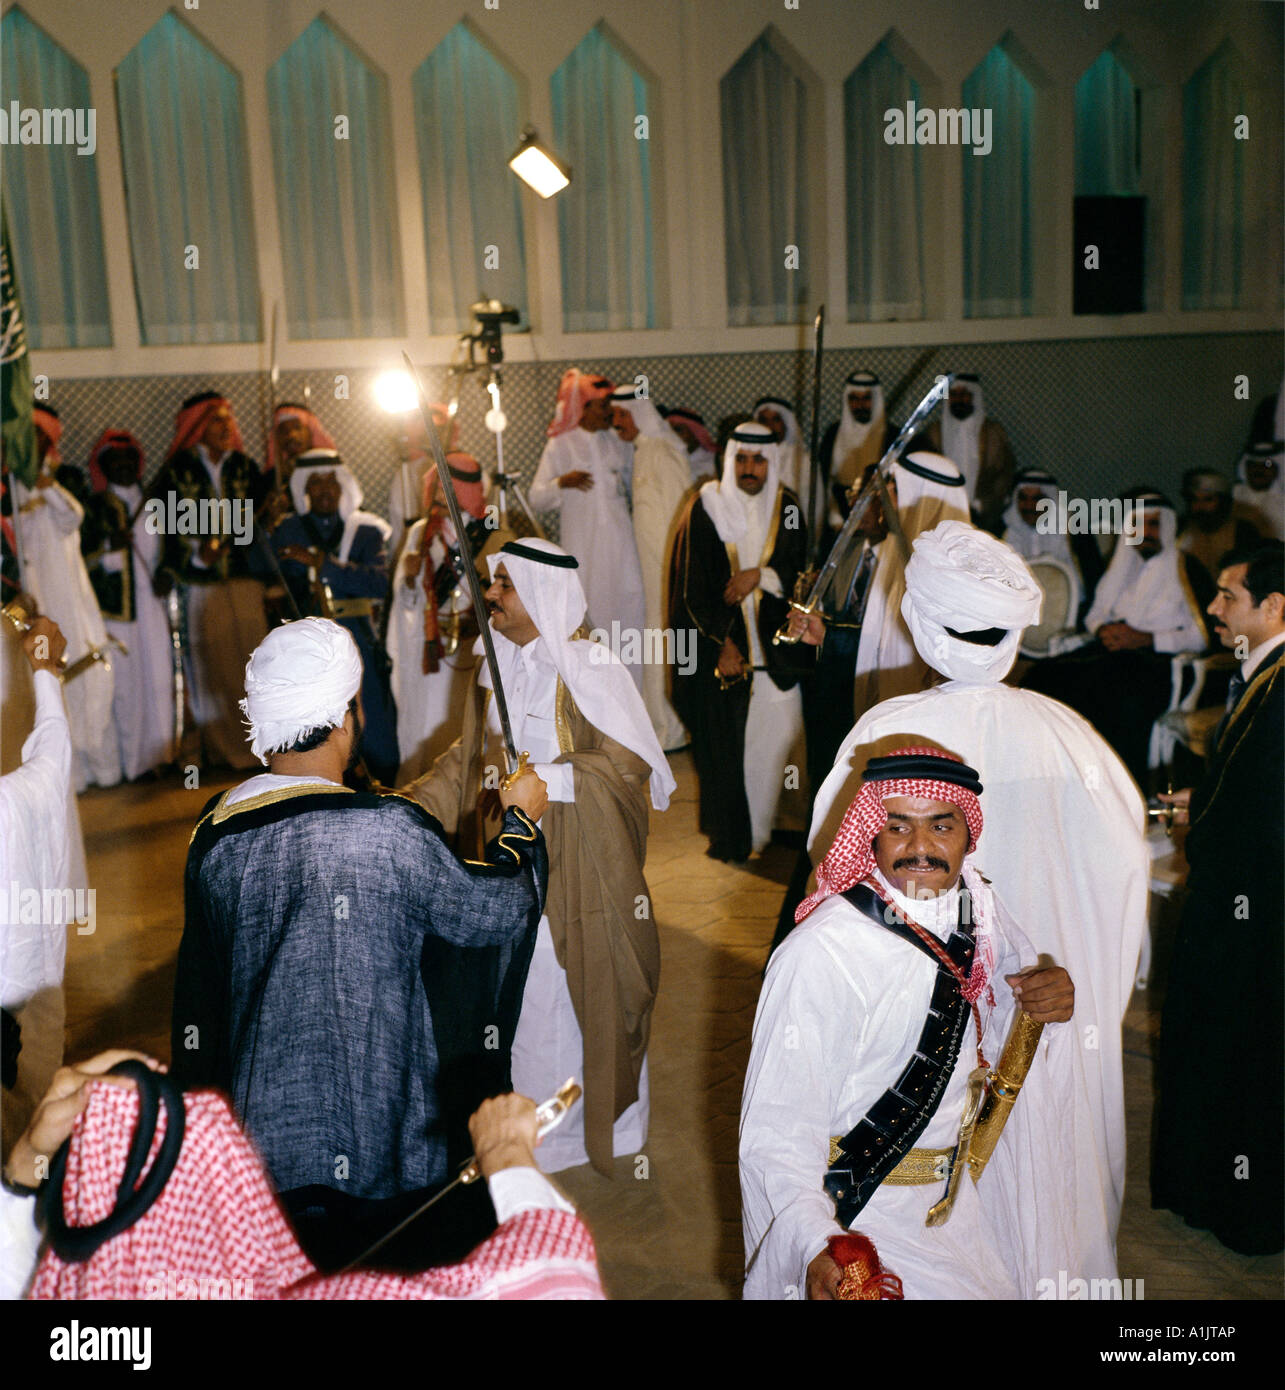 Saudi Arabia Men In Dish Dash Dancing With Swords Stock Photo